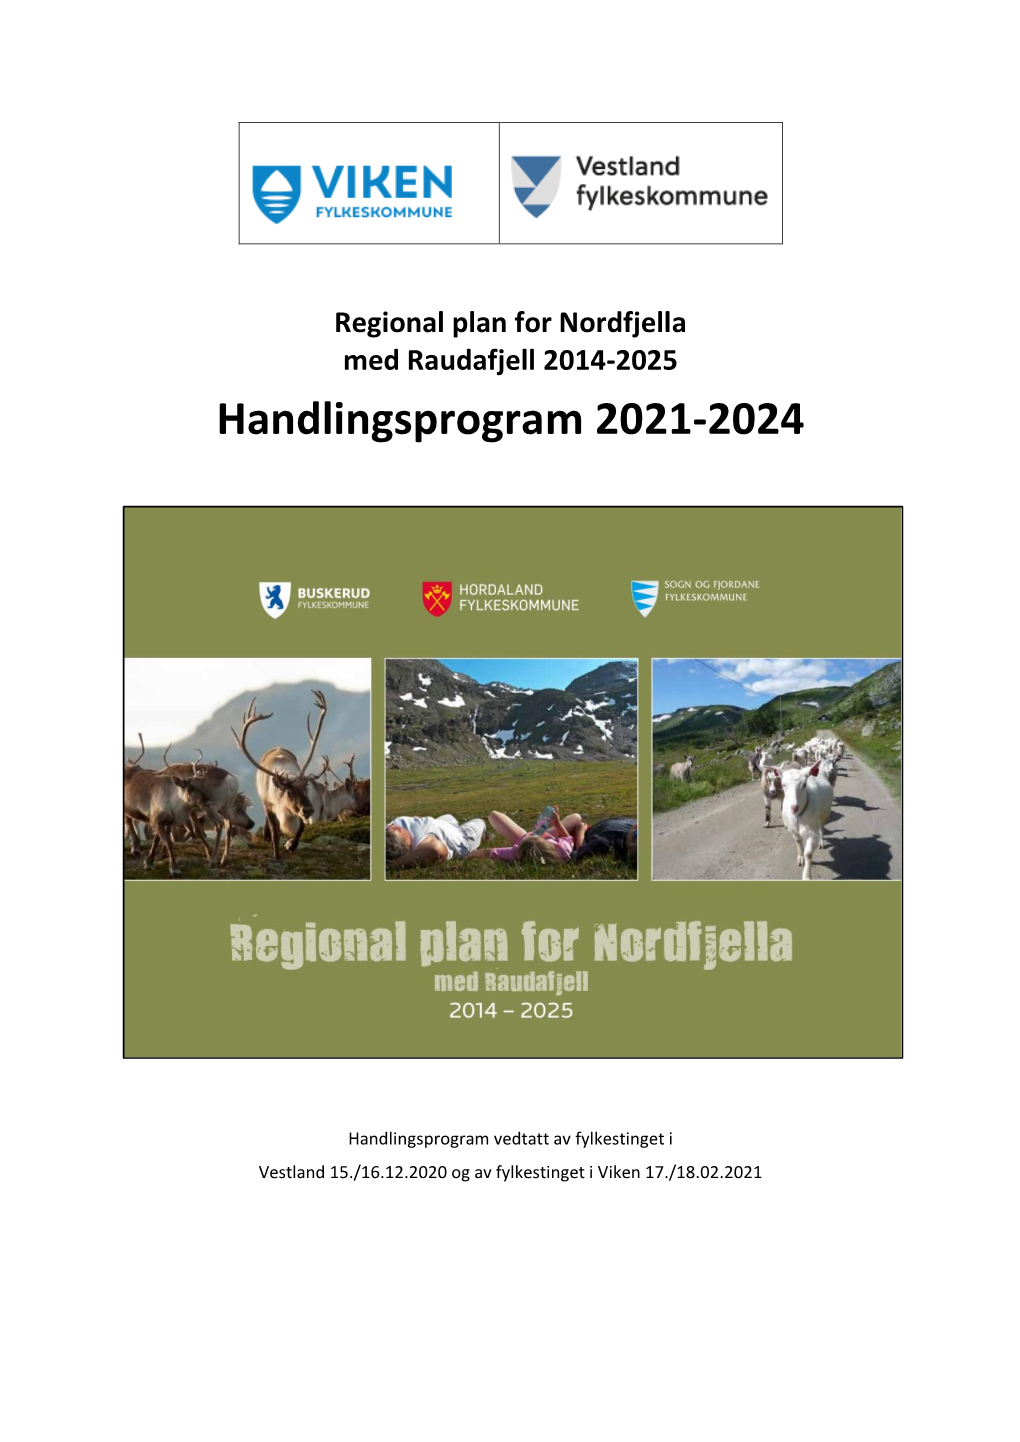 Regional Plan for Nordfjella Med Raudafjell 2014-2025 Handlingsprogram 2021-2024